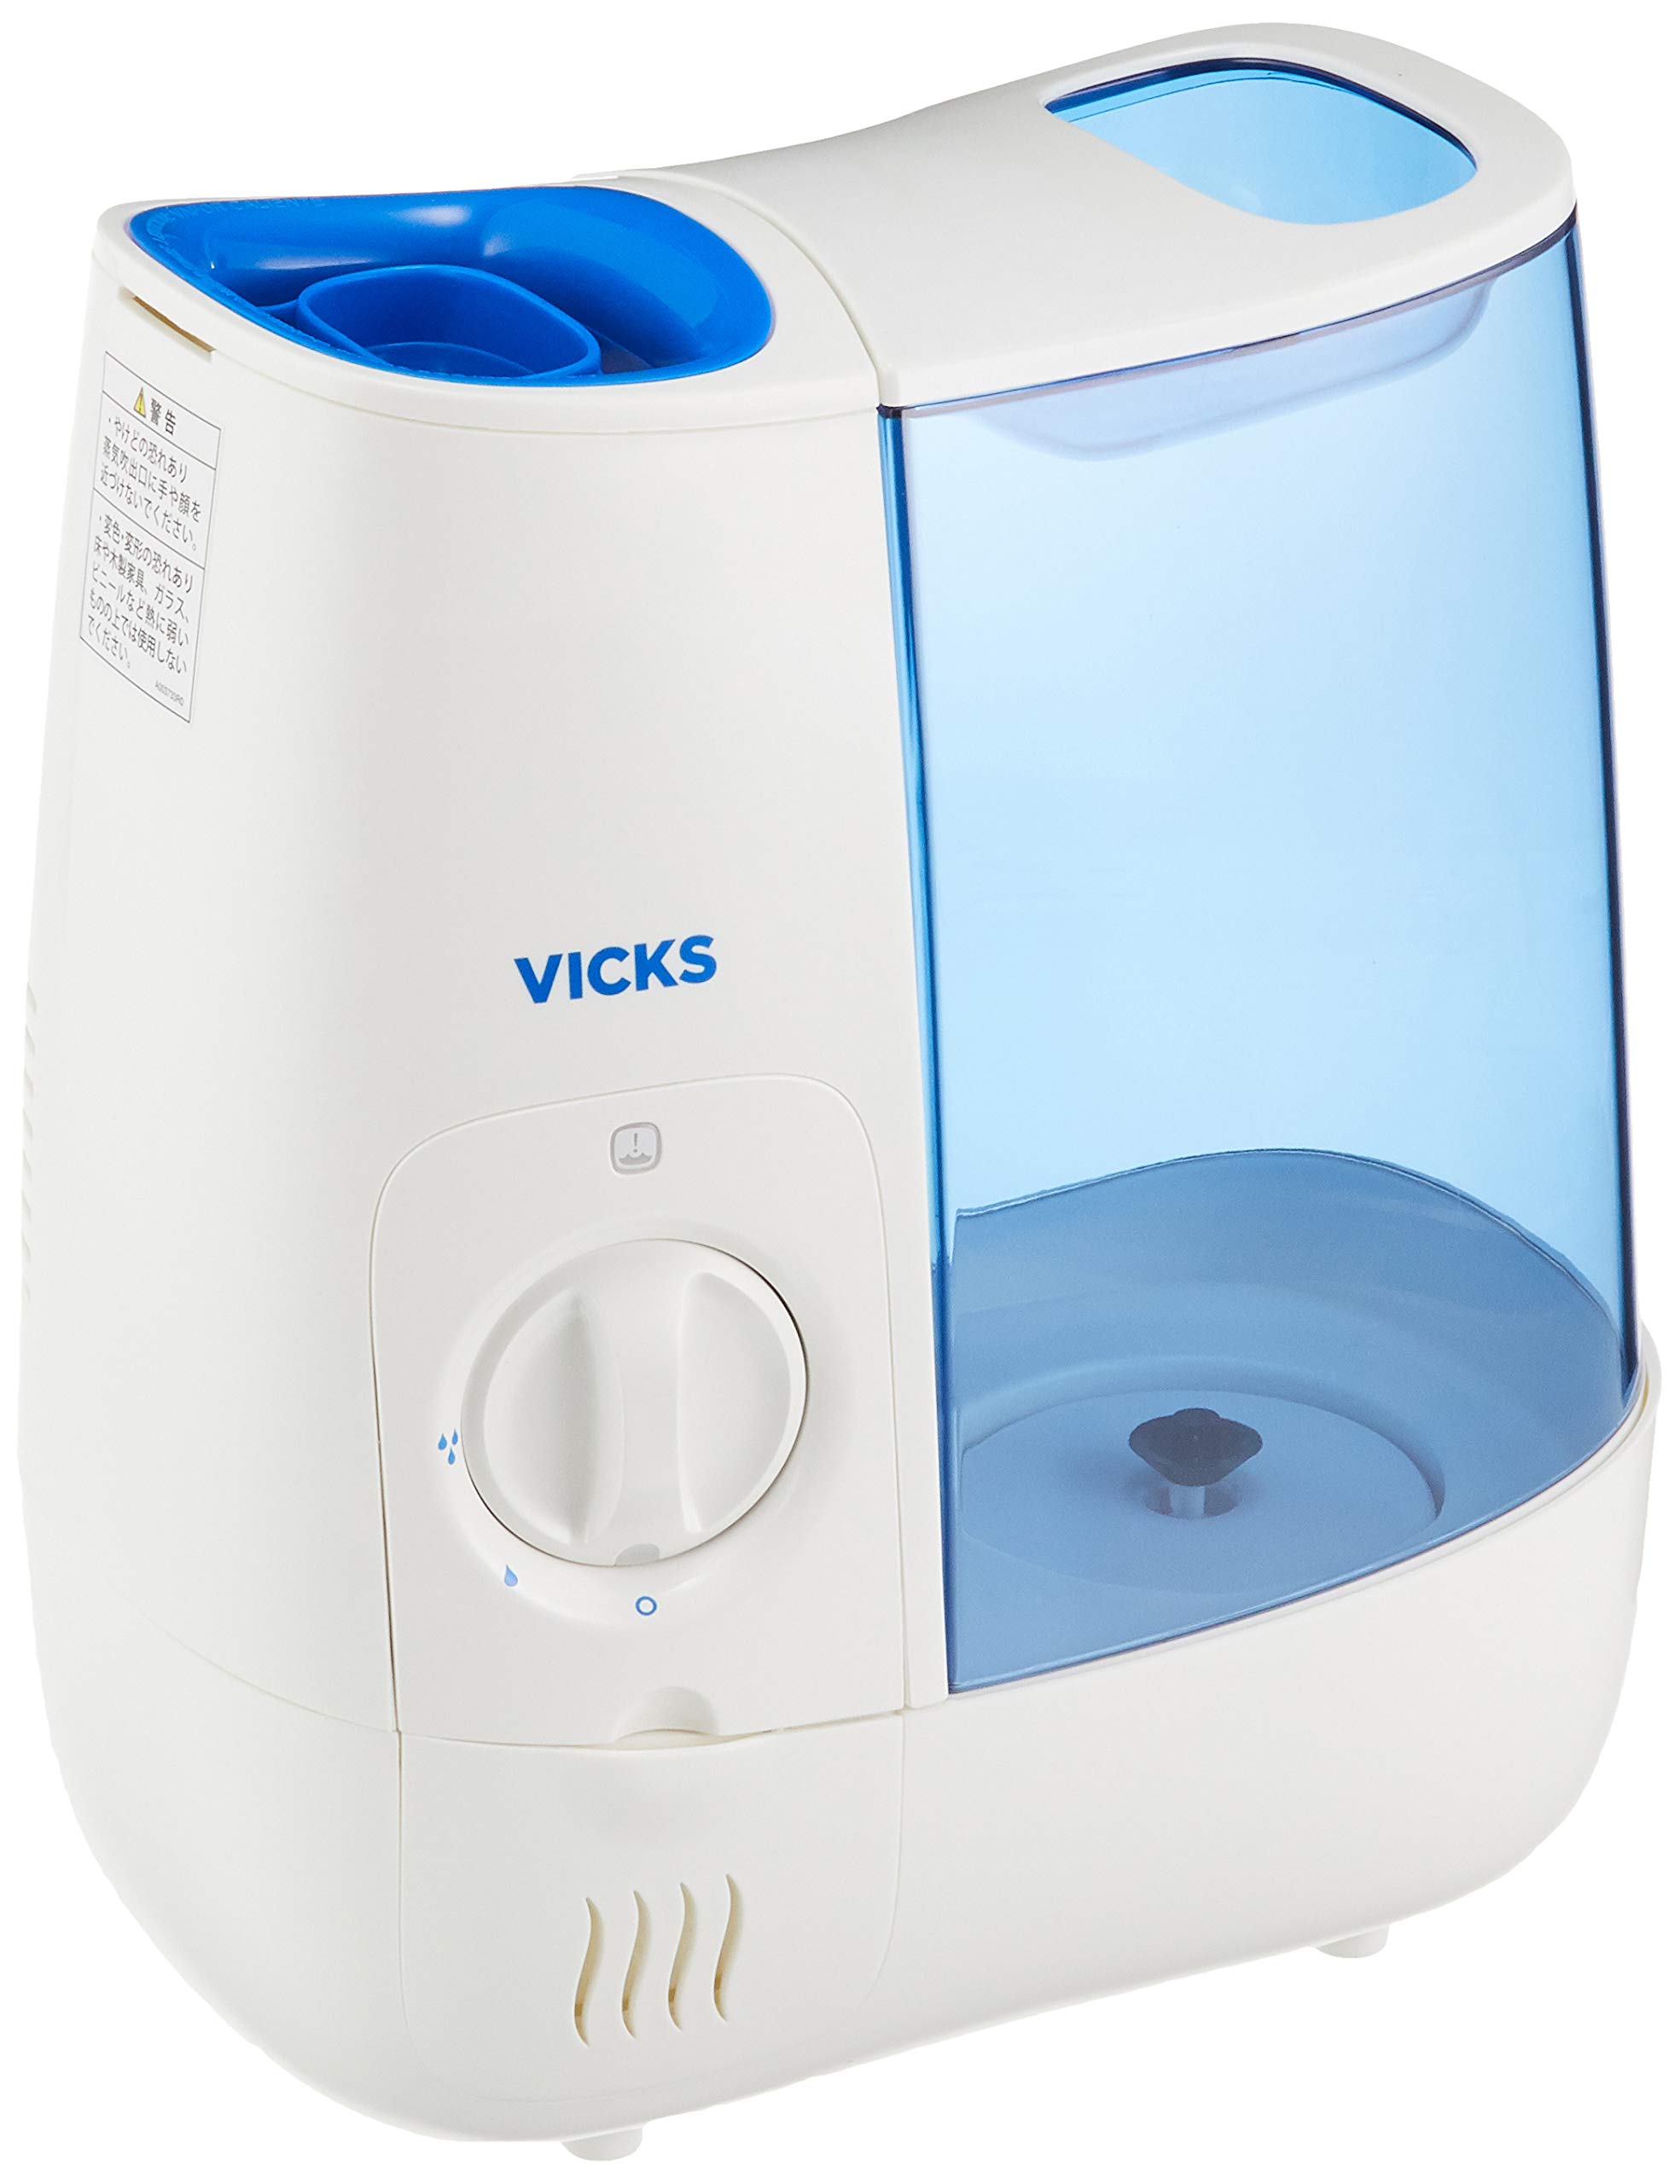 大正製薬 スチーム式加湿器 VWM845J ×1台 VICKS 加湿器の商品画像